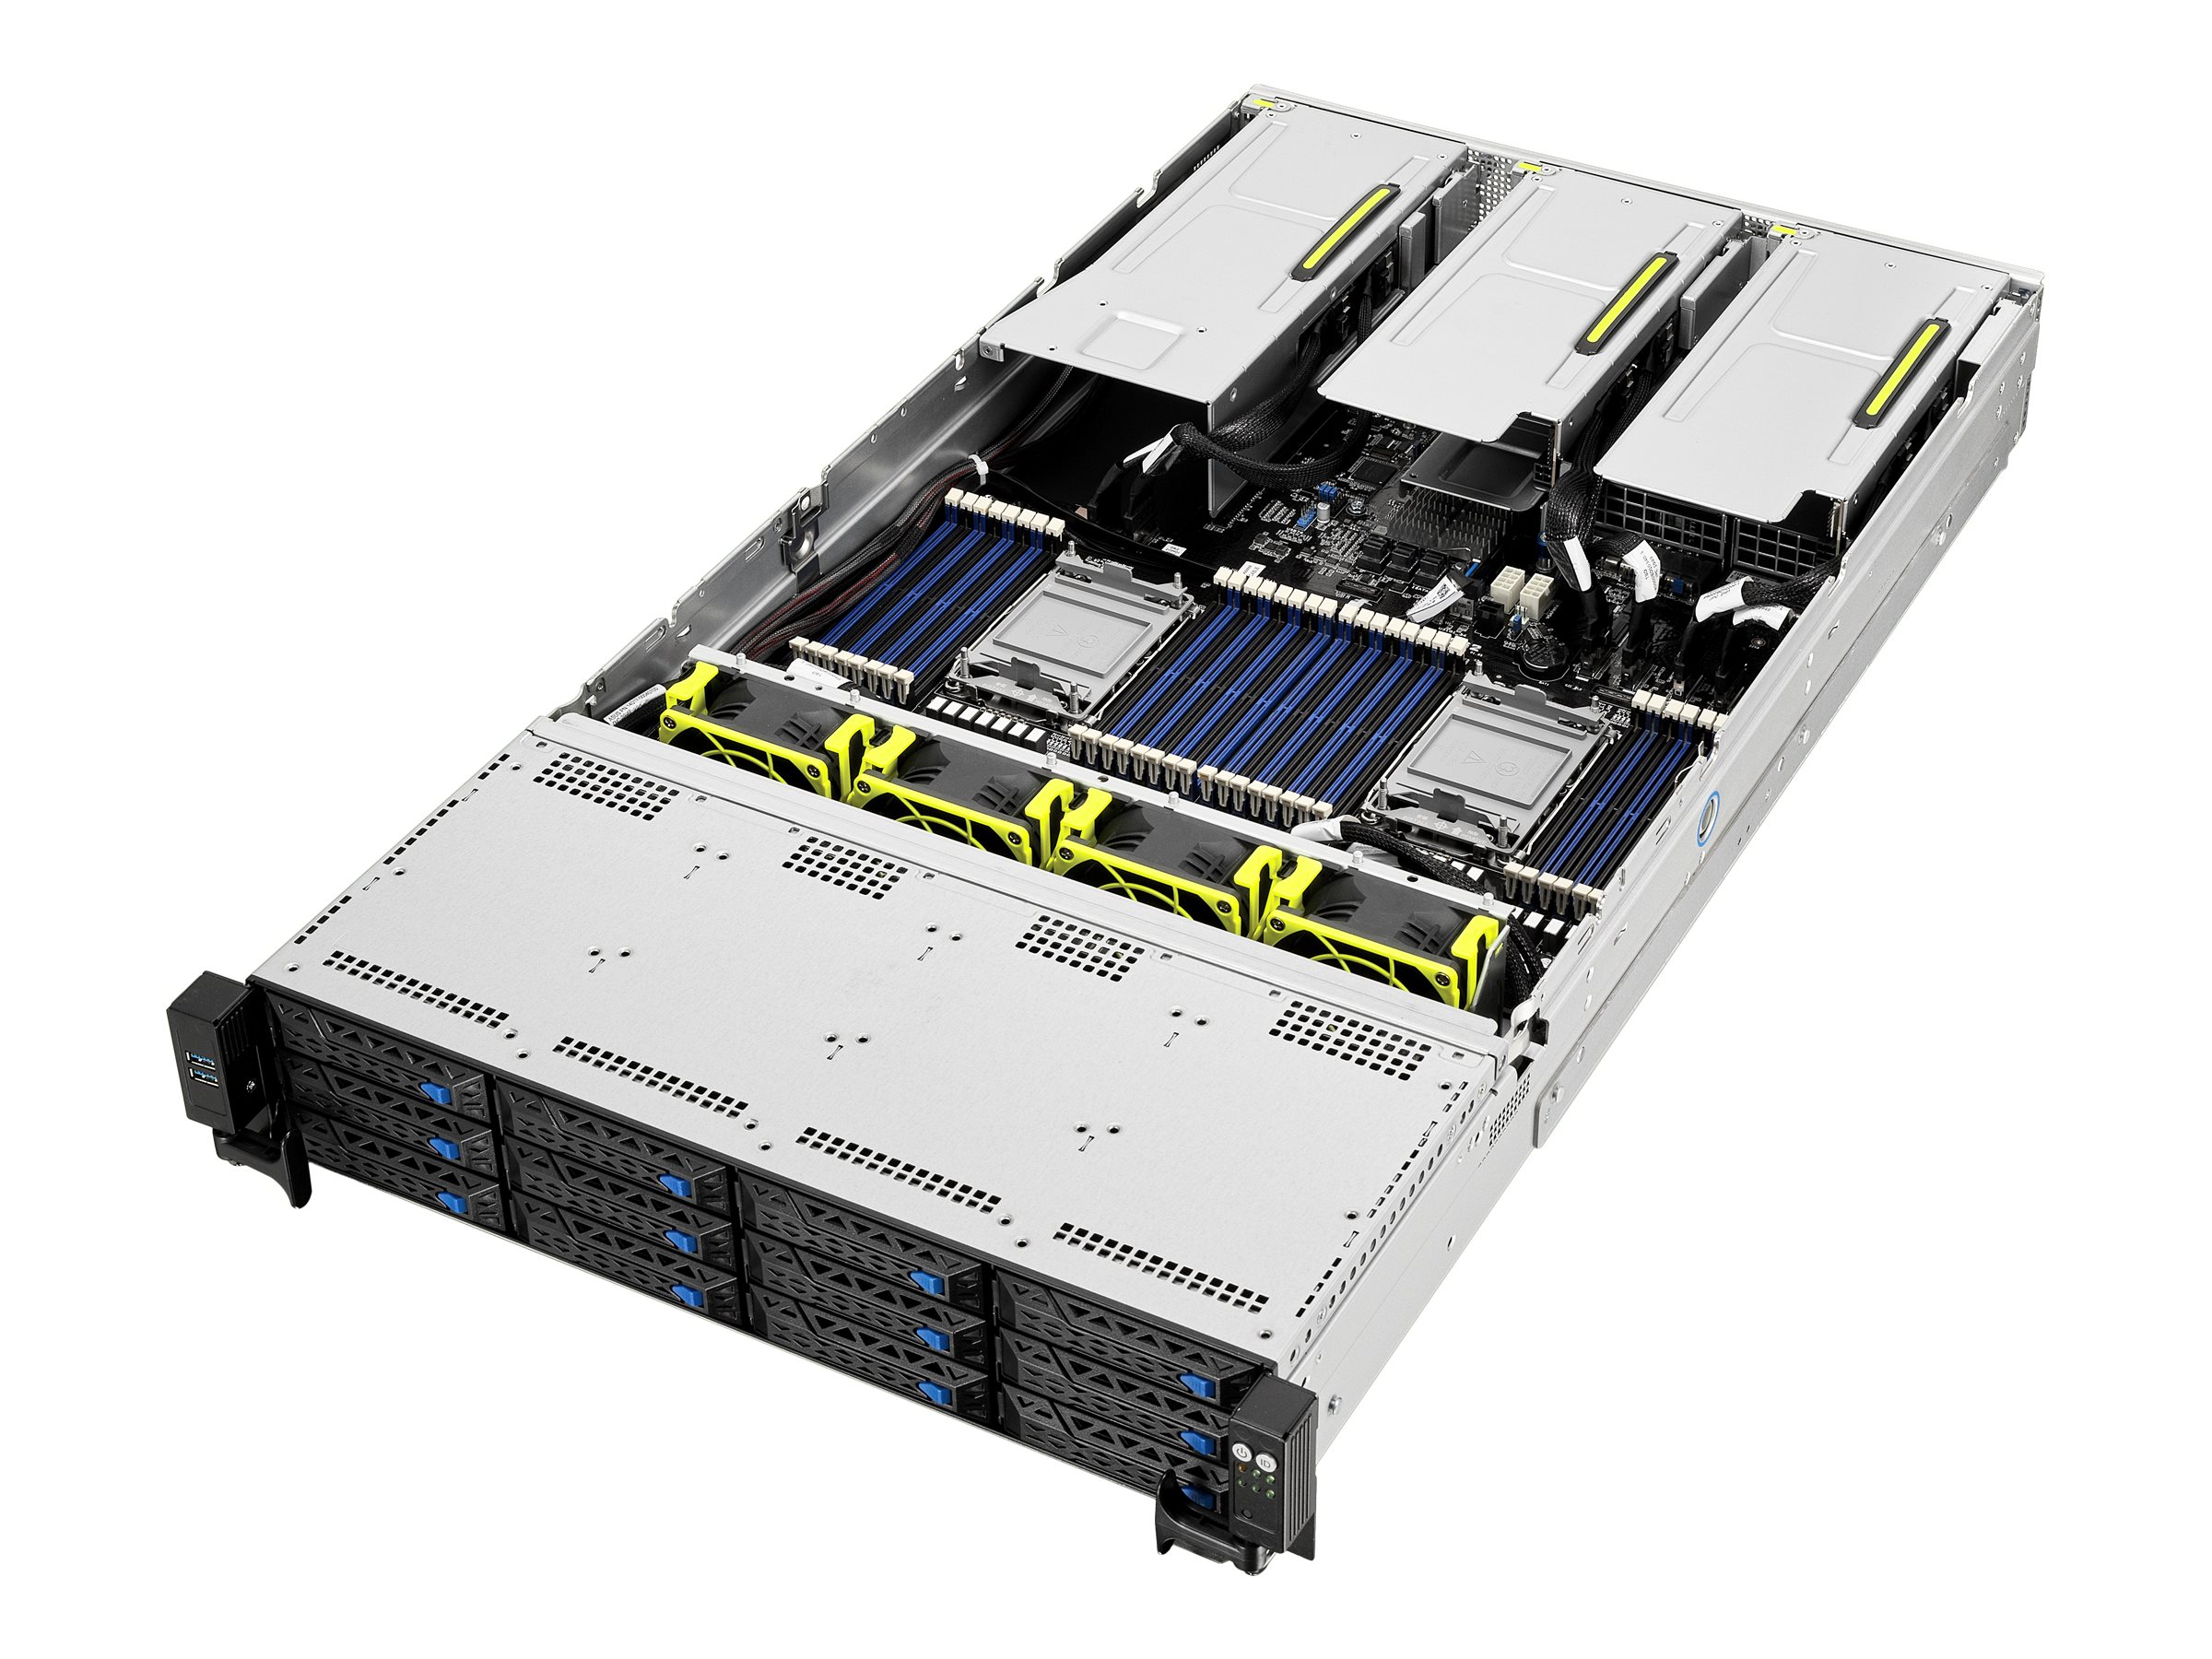 ASUS RS720-E10-RS12 - Server - Rack-Montage - 2U - zweiweg - keine CPU - RAM 0 GB - SATA - Hot-Swap 6.4 cm, 8.9 cm (2.5", 3.5")